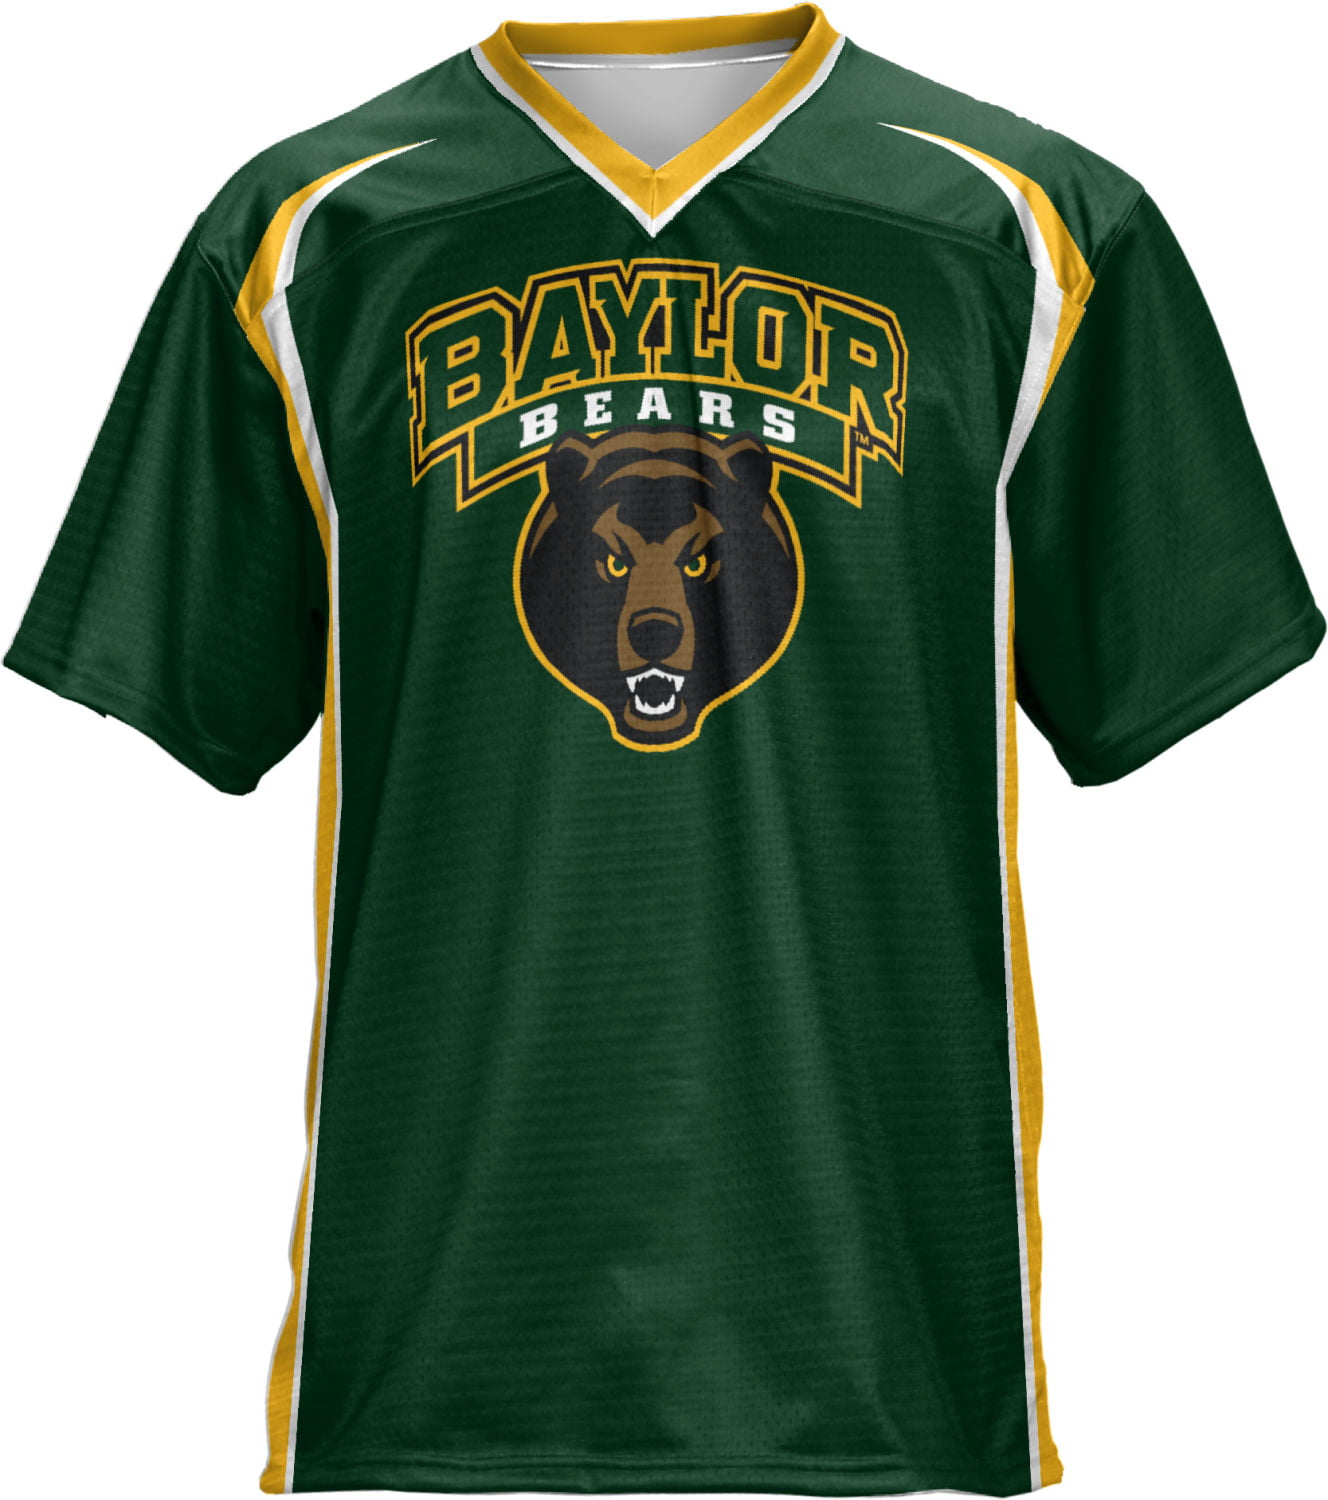 baylor university jersey